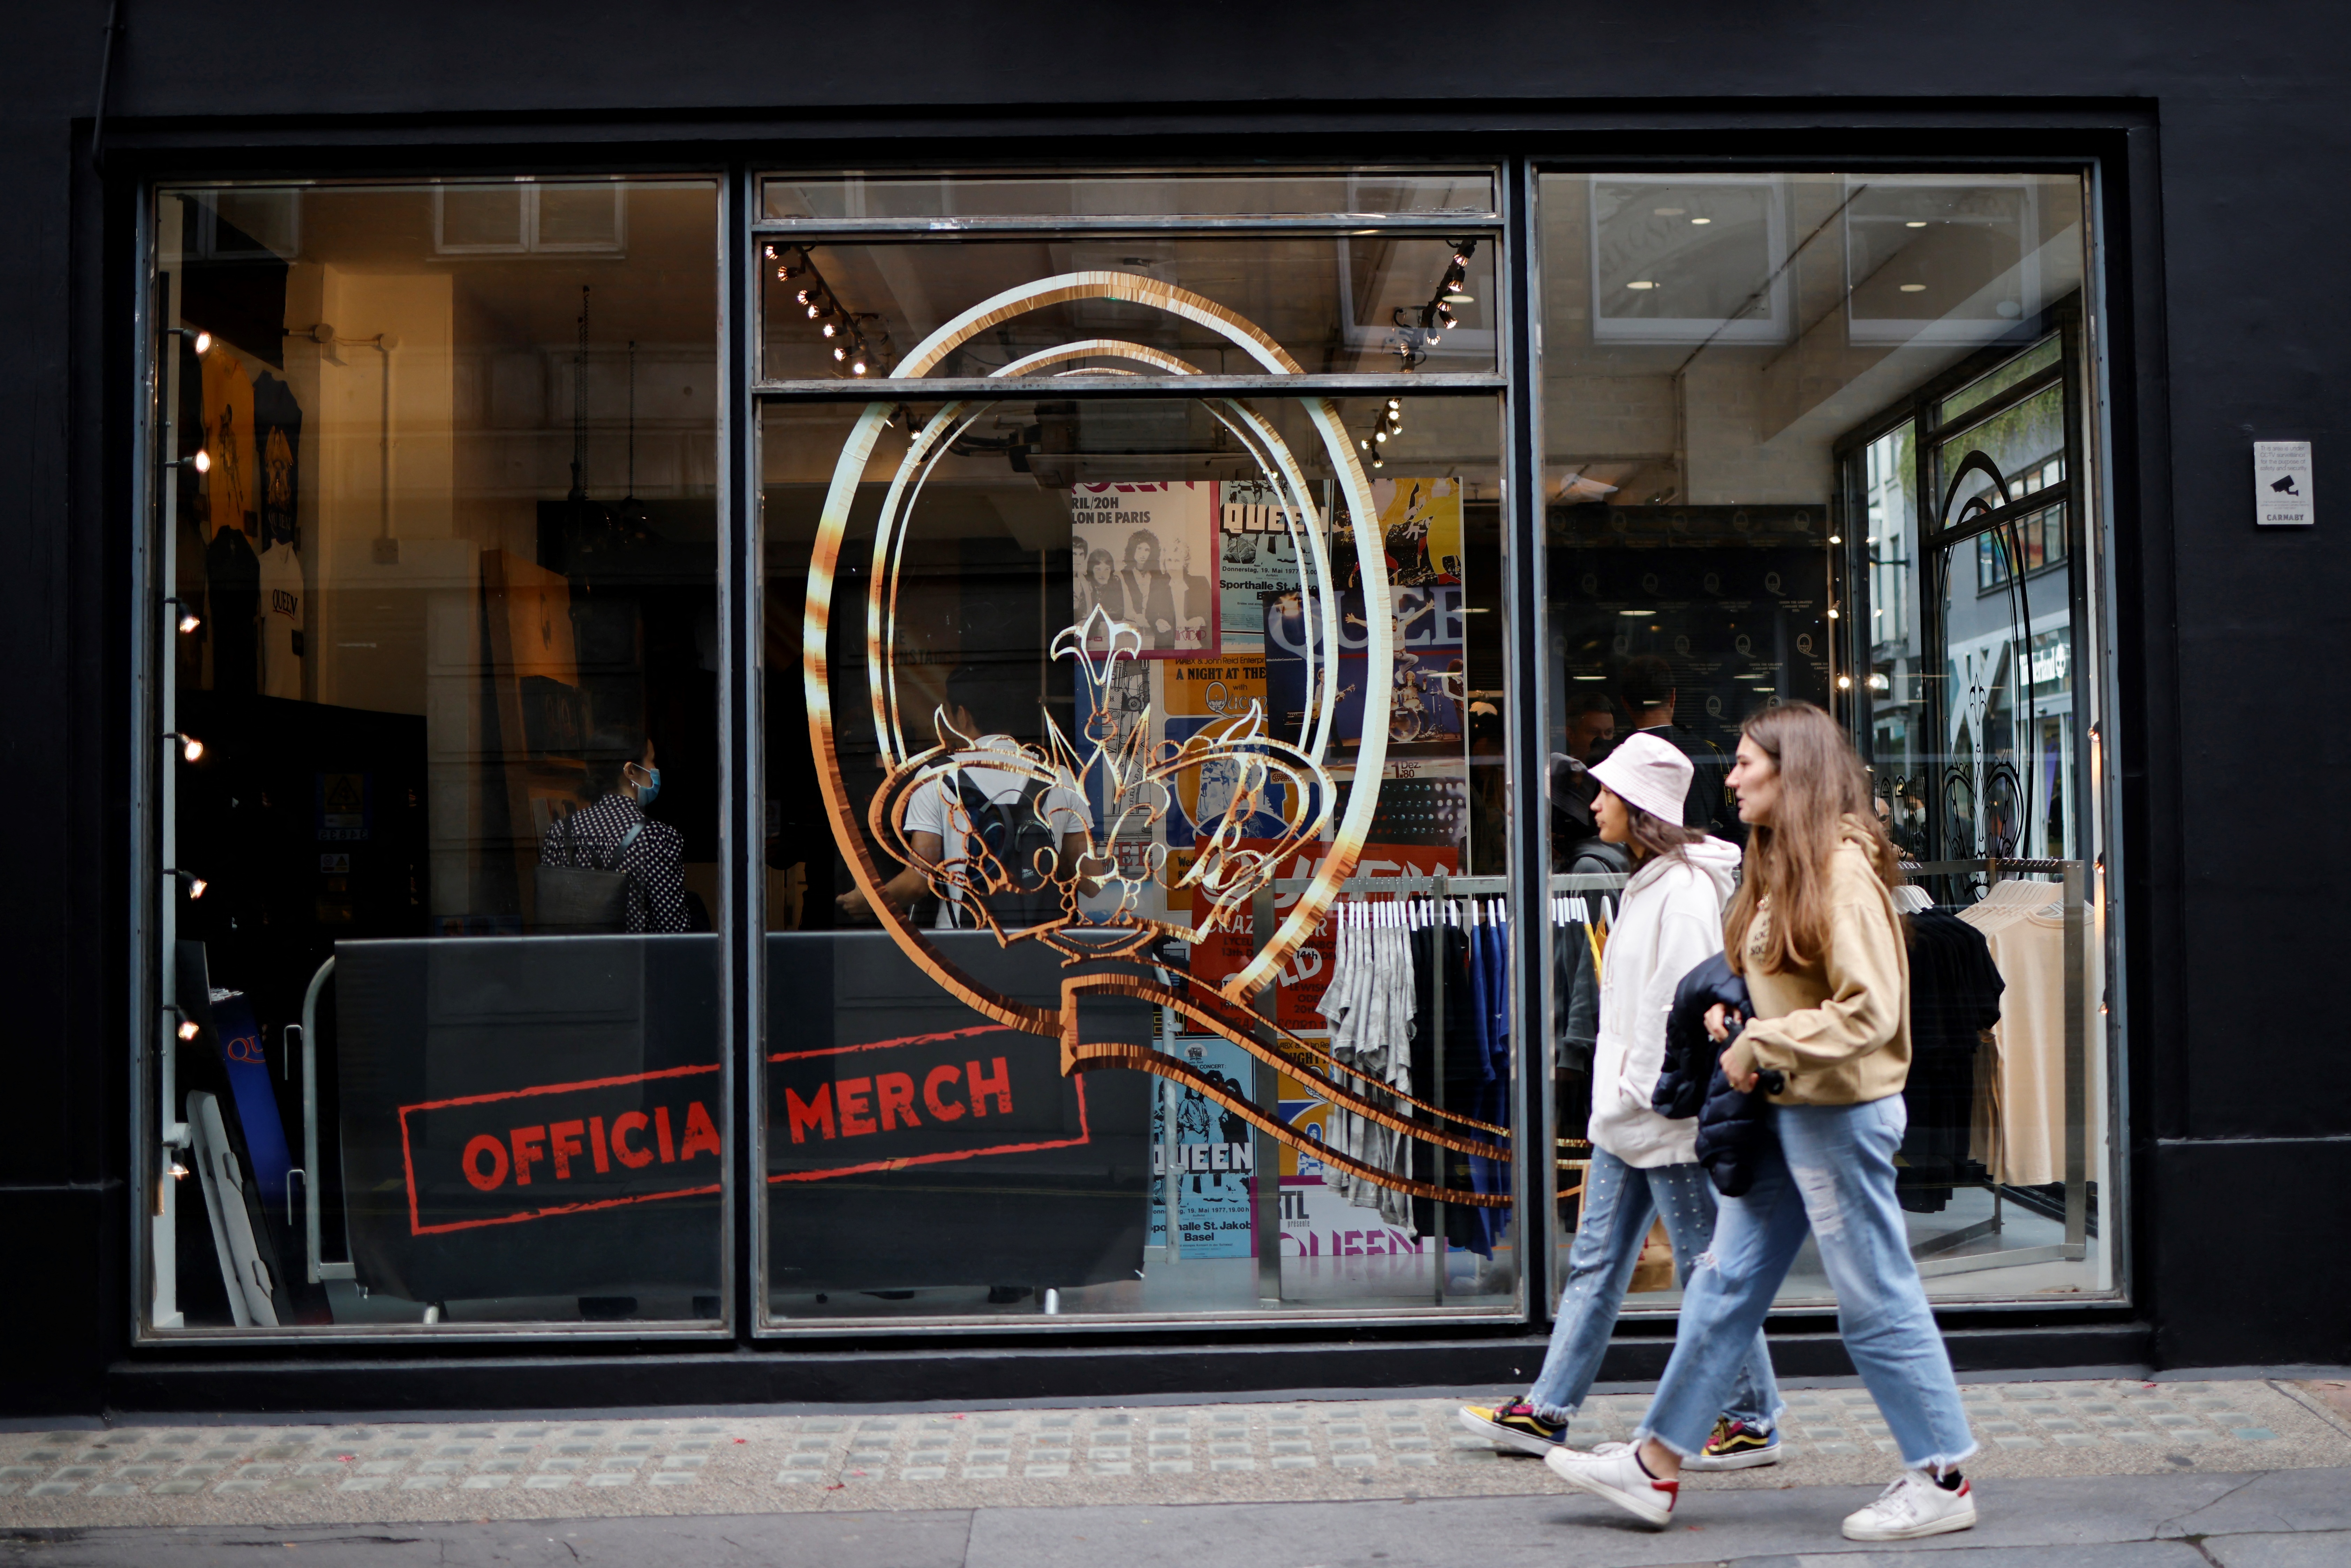 Queen celebra cinco décadas de música con una tienda física en Londres (FOTOS)